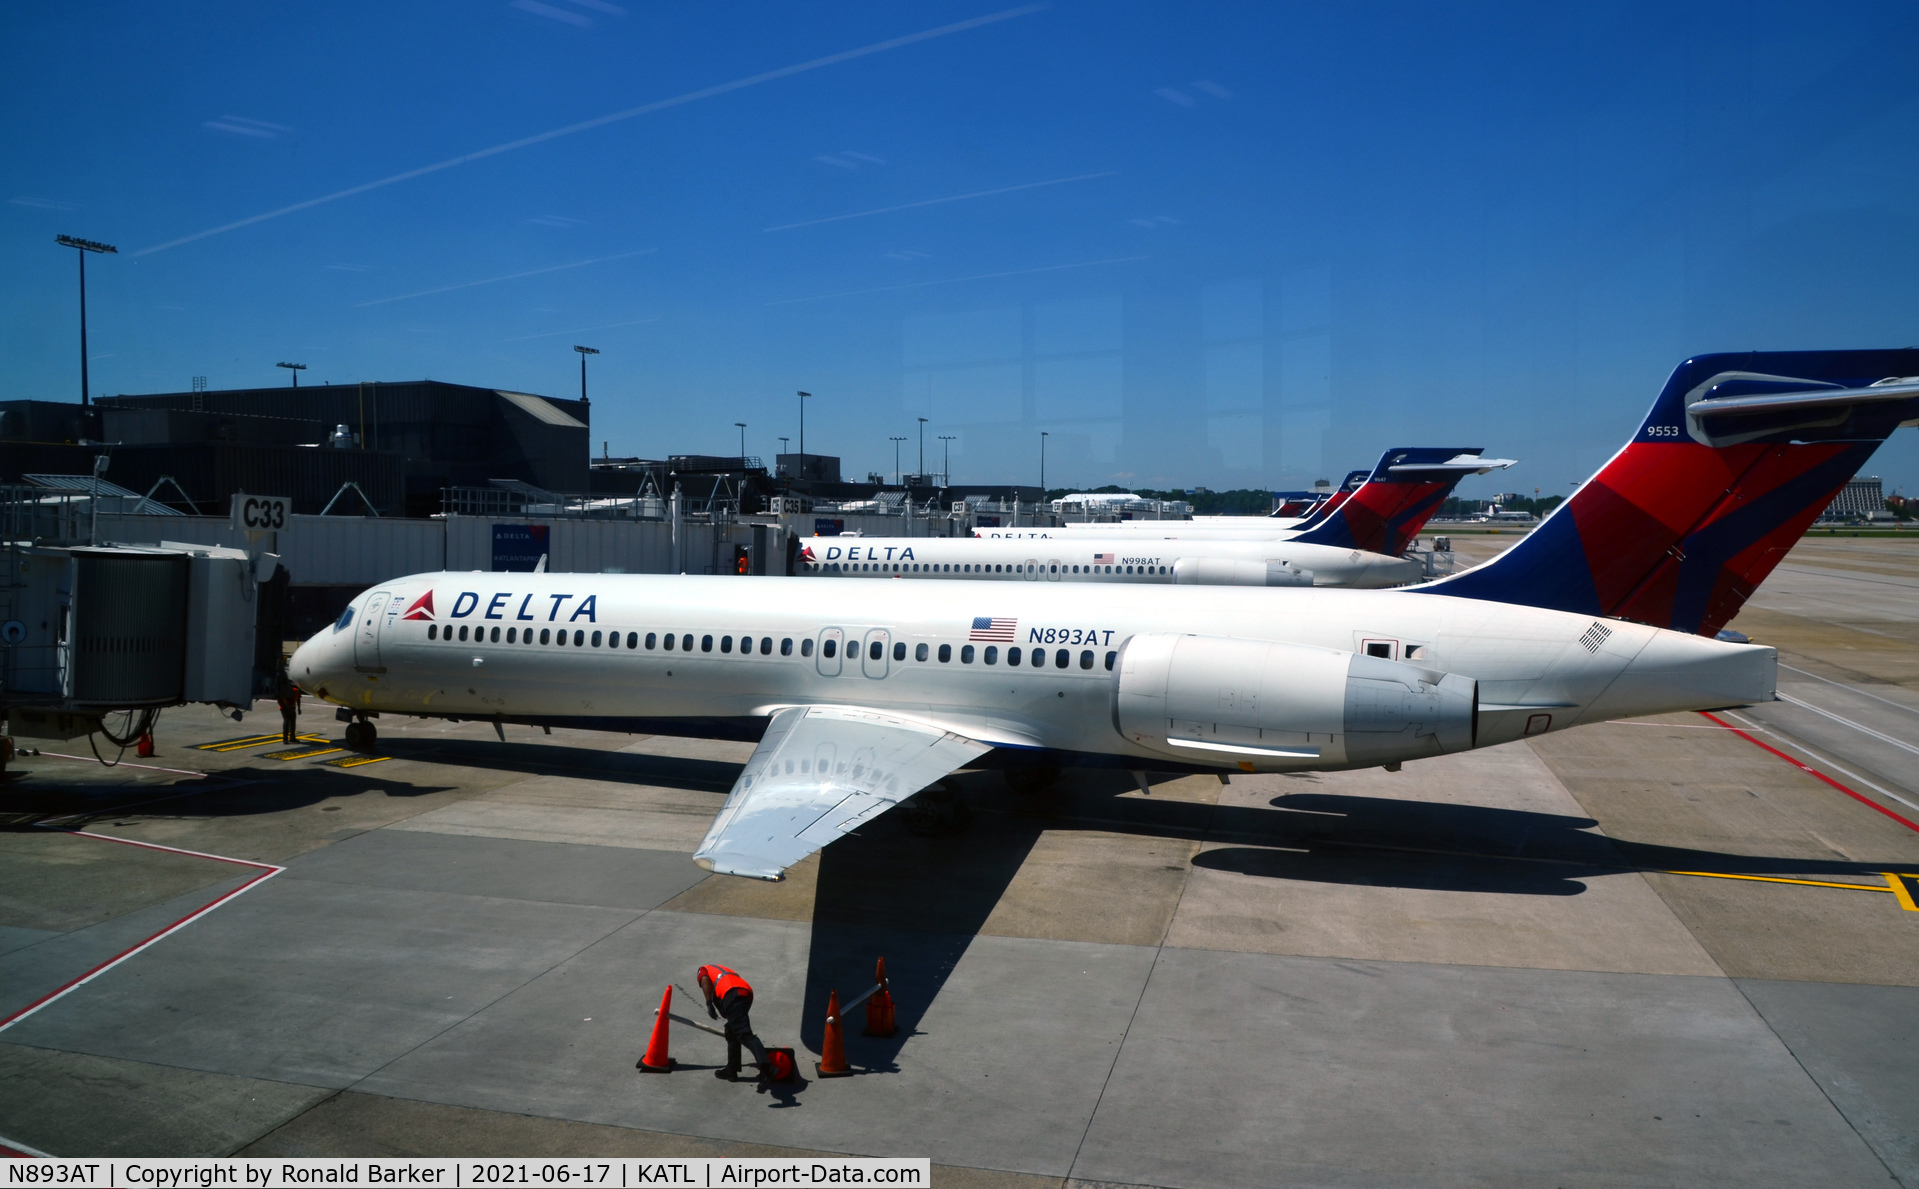 N893AT, 2004 Boeing 717-200 C/N 55045, Arrive gate C33 Atlanta